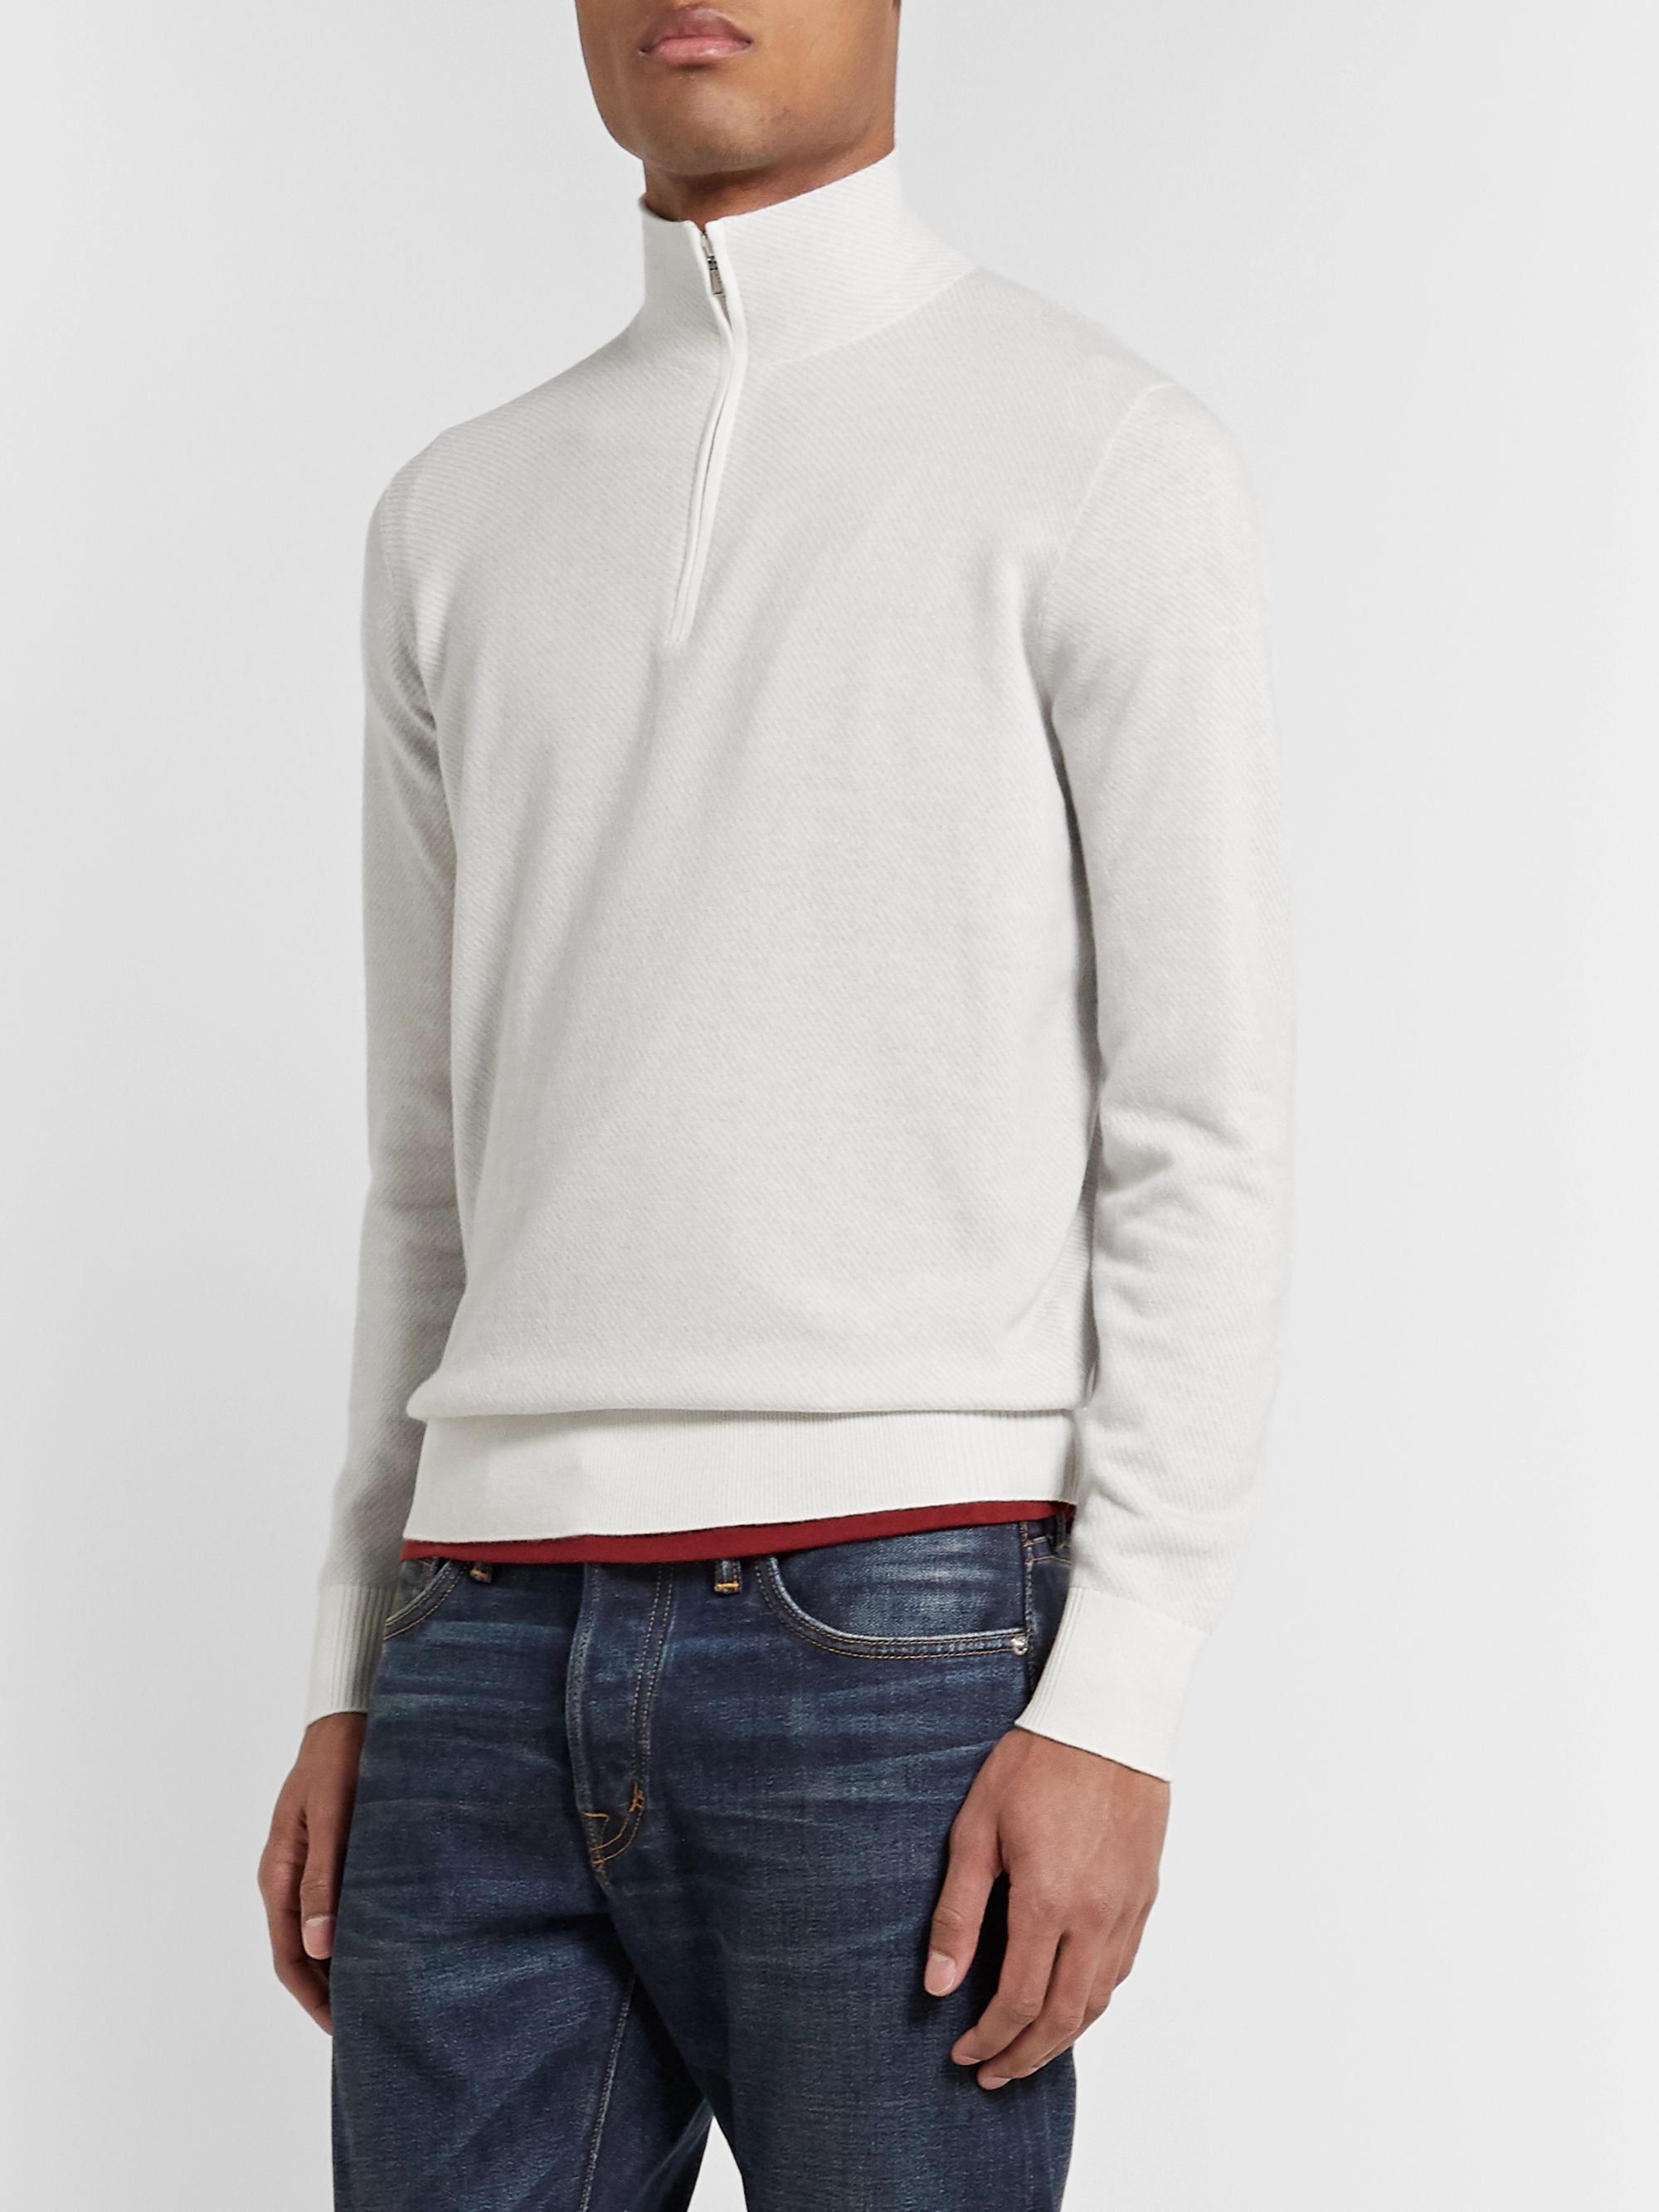 White Roadster Striped Cashmere Half-Zip Sweater | Loro Piana | MR PORTER